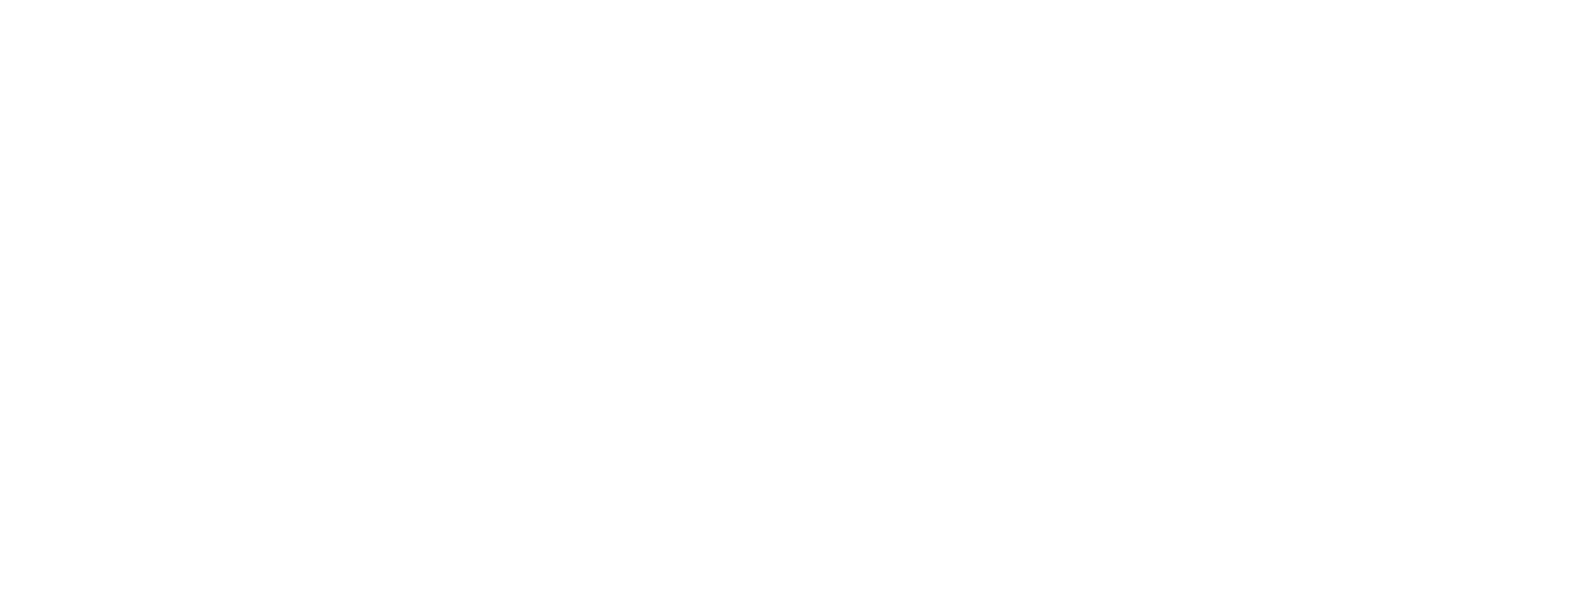 BondBloxx logo large for dark backgrounds (transparent PNG)